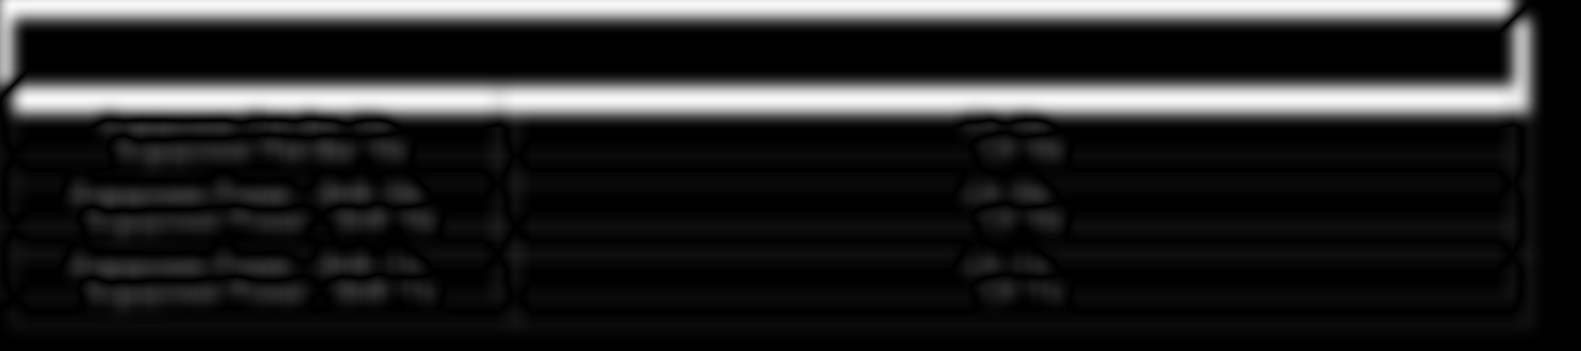 CANTILEVER BREMSEN 1 - TECHNISCHE SPEZIFIKATIONEN Höhenverstellbarkeit der Bremsschuhe: 20 35 mm Justage des Abstands zwischen Bremsbelägen und Felge (Möglichkeit zur Verwendung von Reifenbreite 19